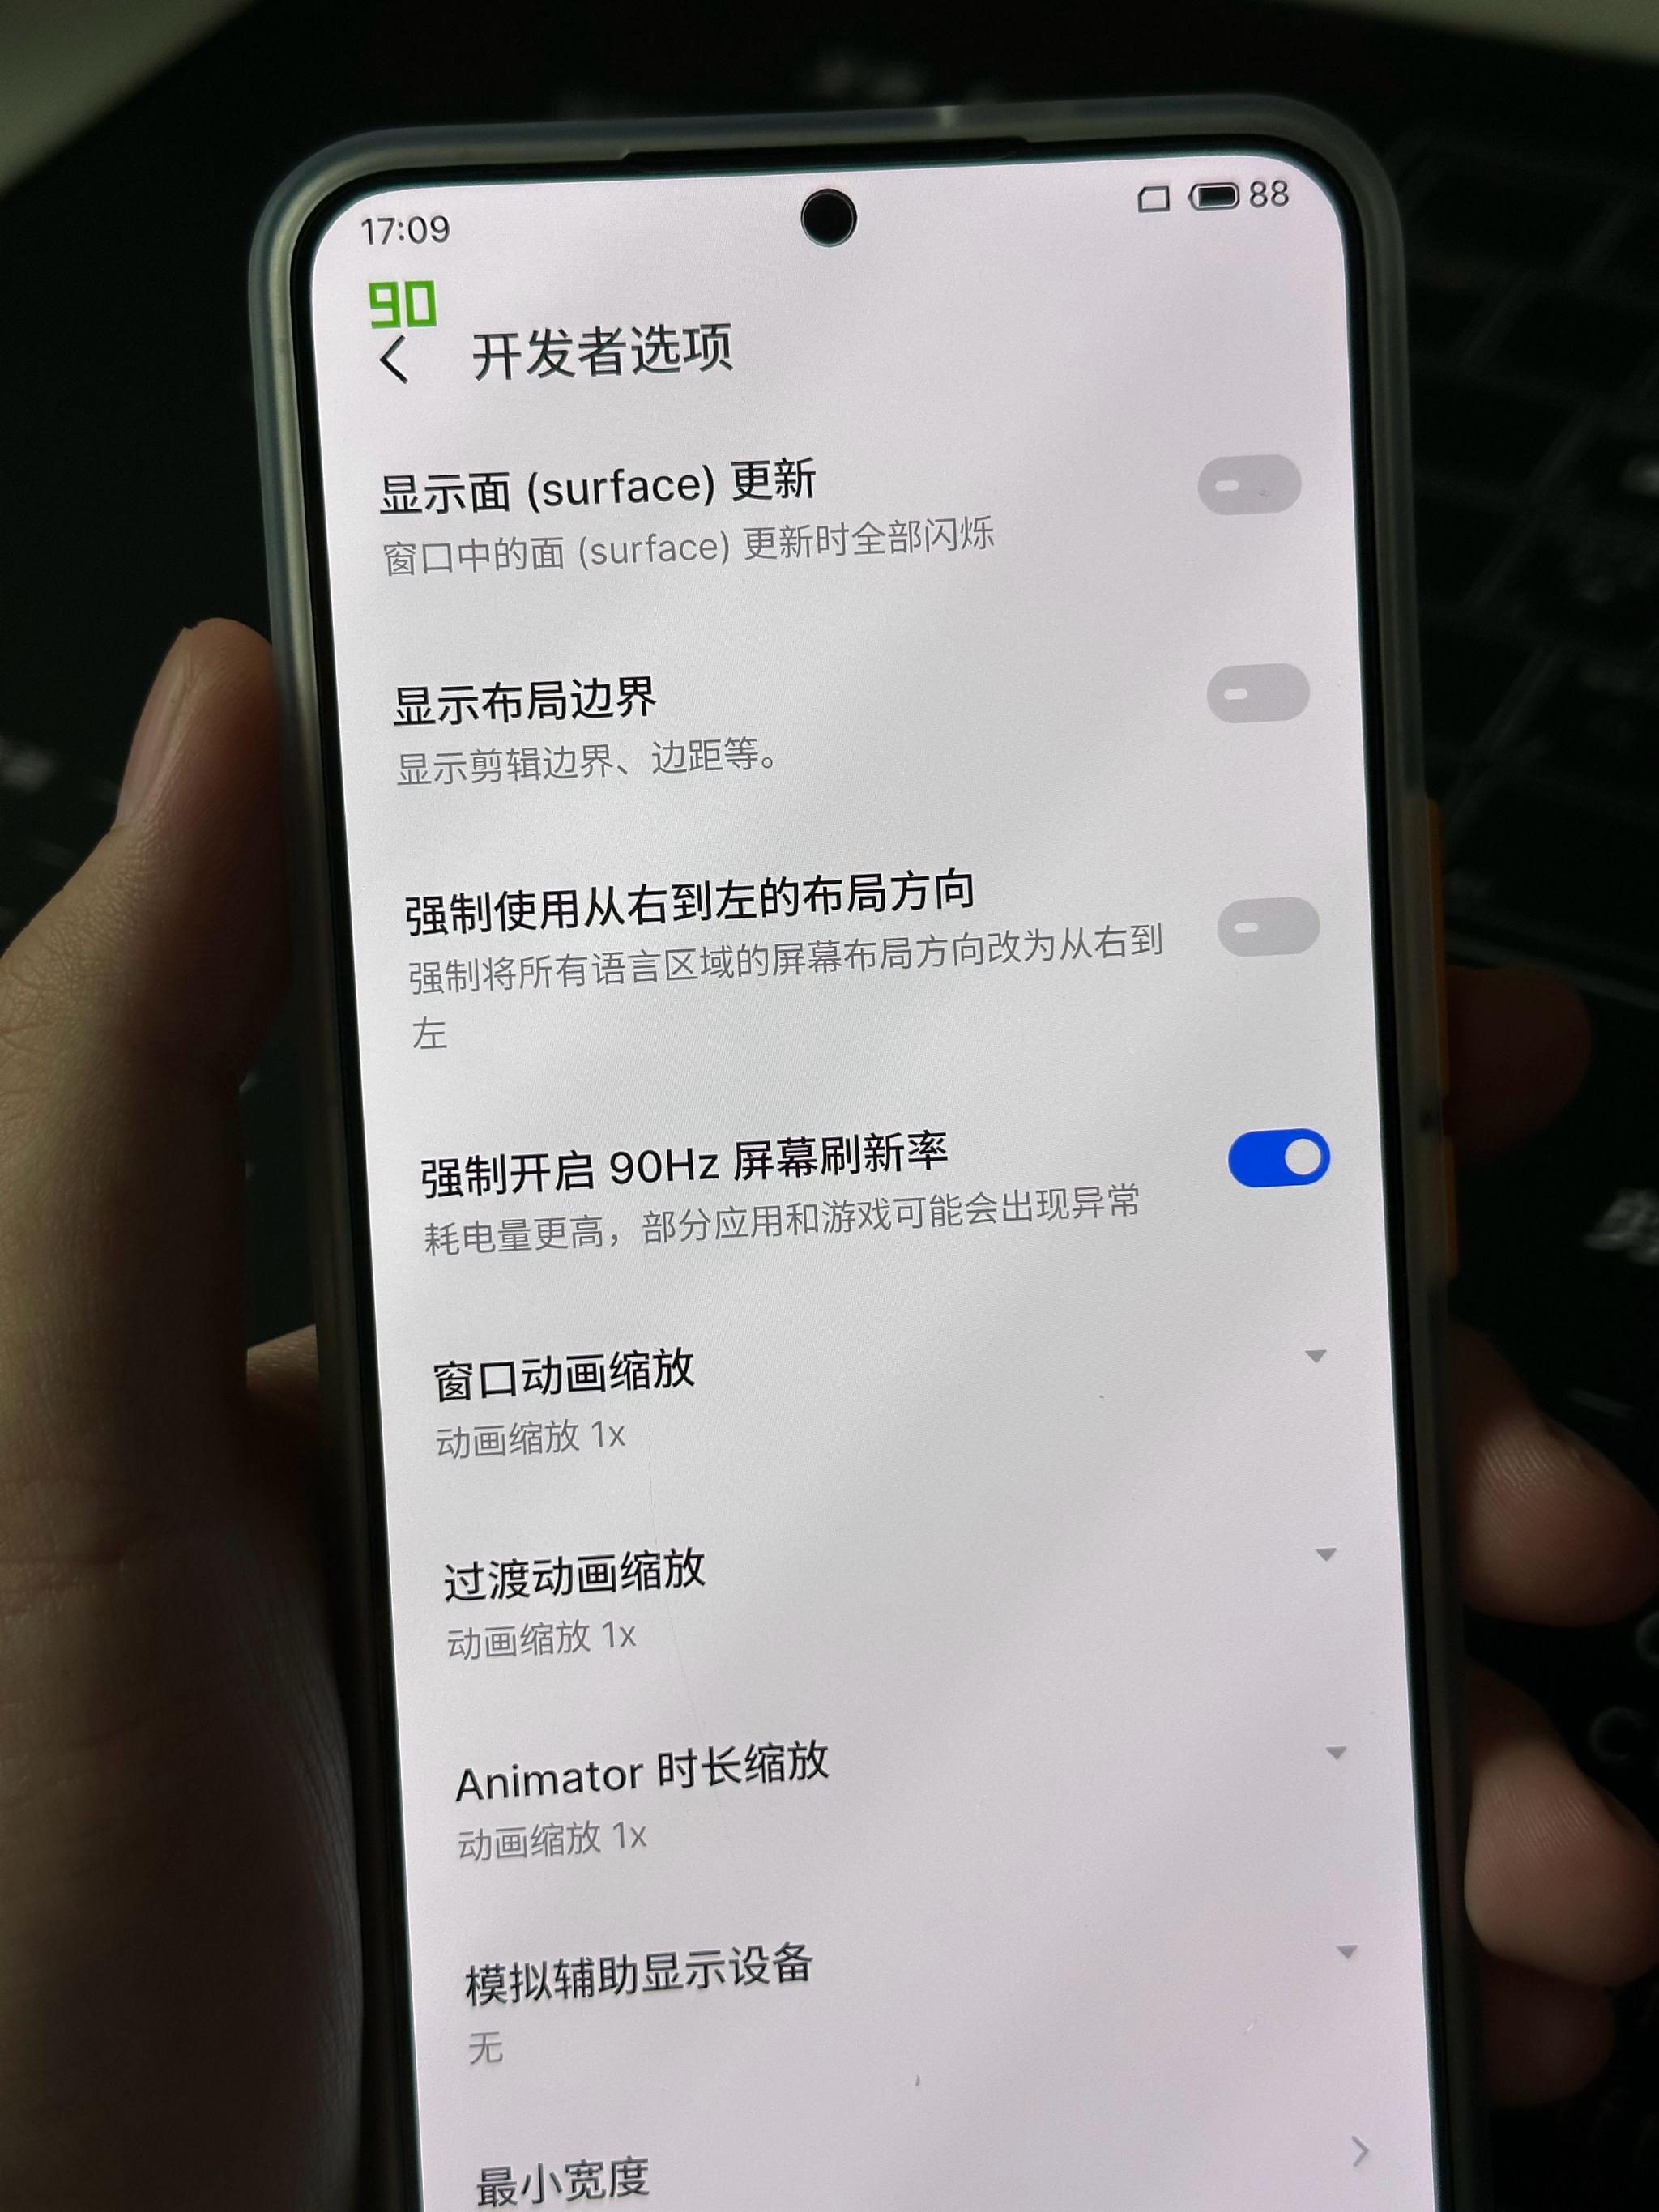 魅族MX3改装无线充电 具体操作图赏解释-搜狐数码